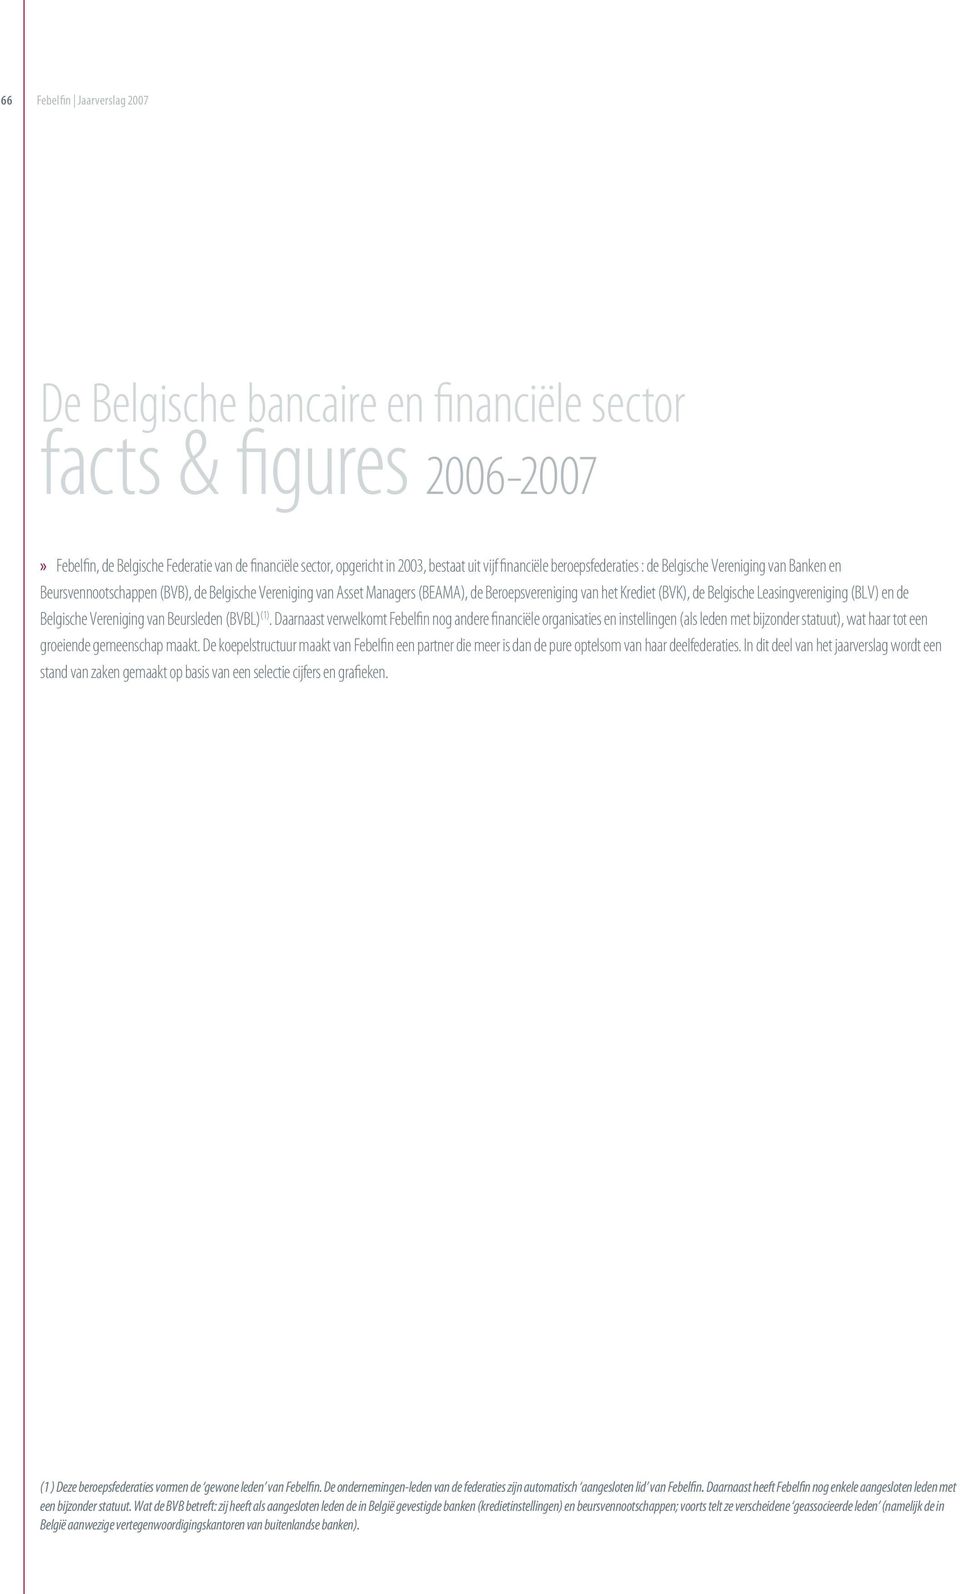 Belgische Leasingvereniging (BLV) en de Belgische Vereniging van Beursleden (BVBL) (1).